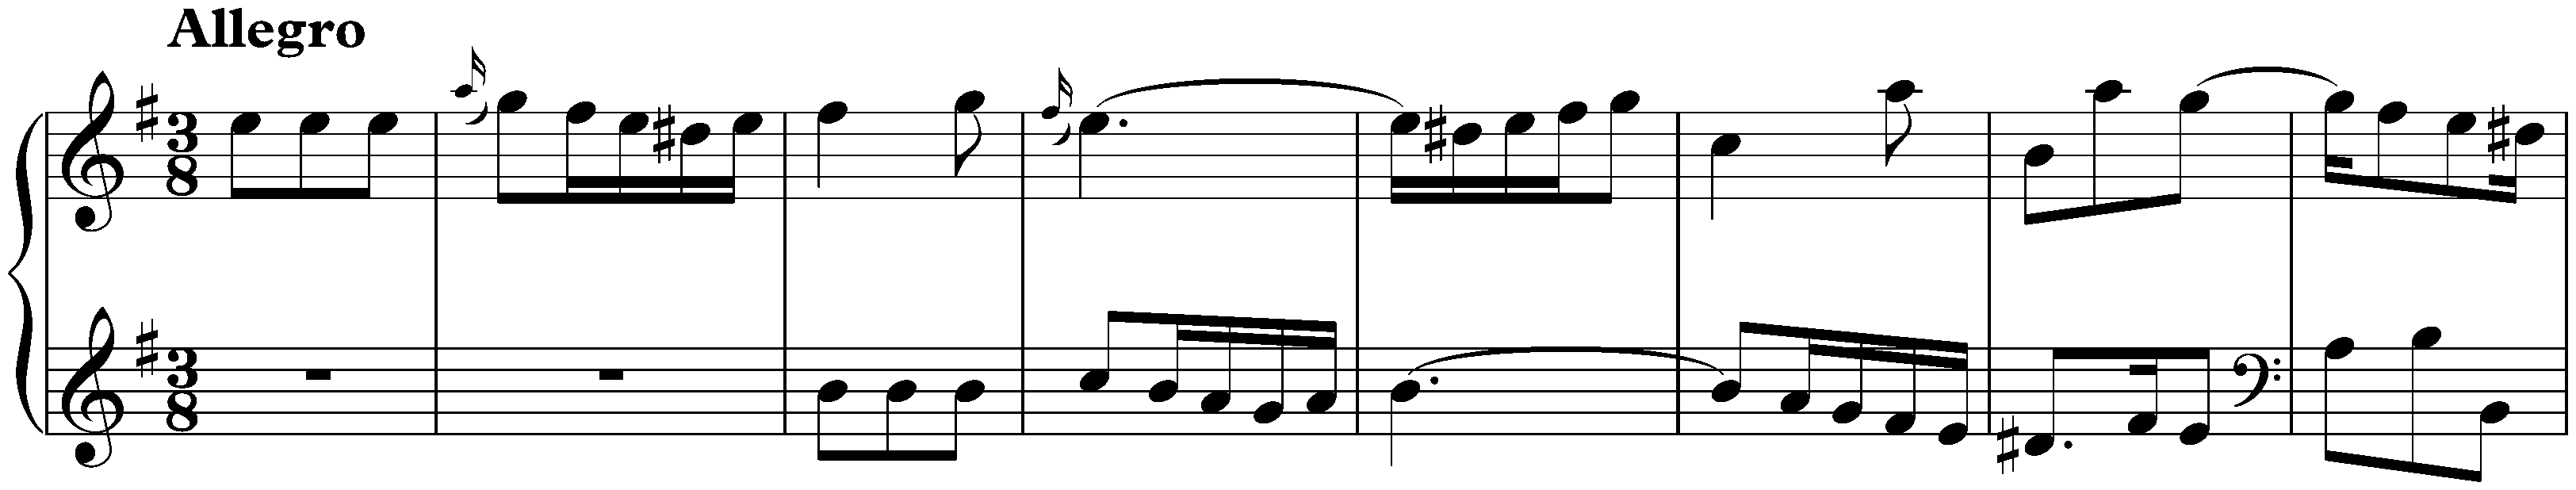 Sonata in E minor, K. 233